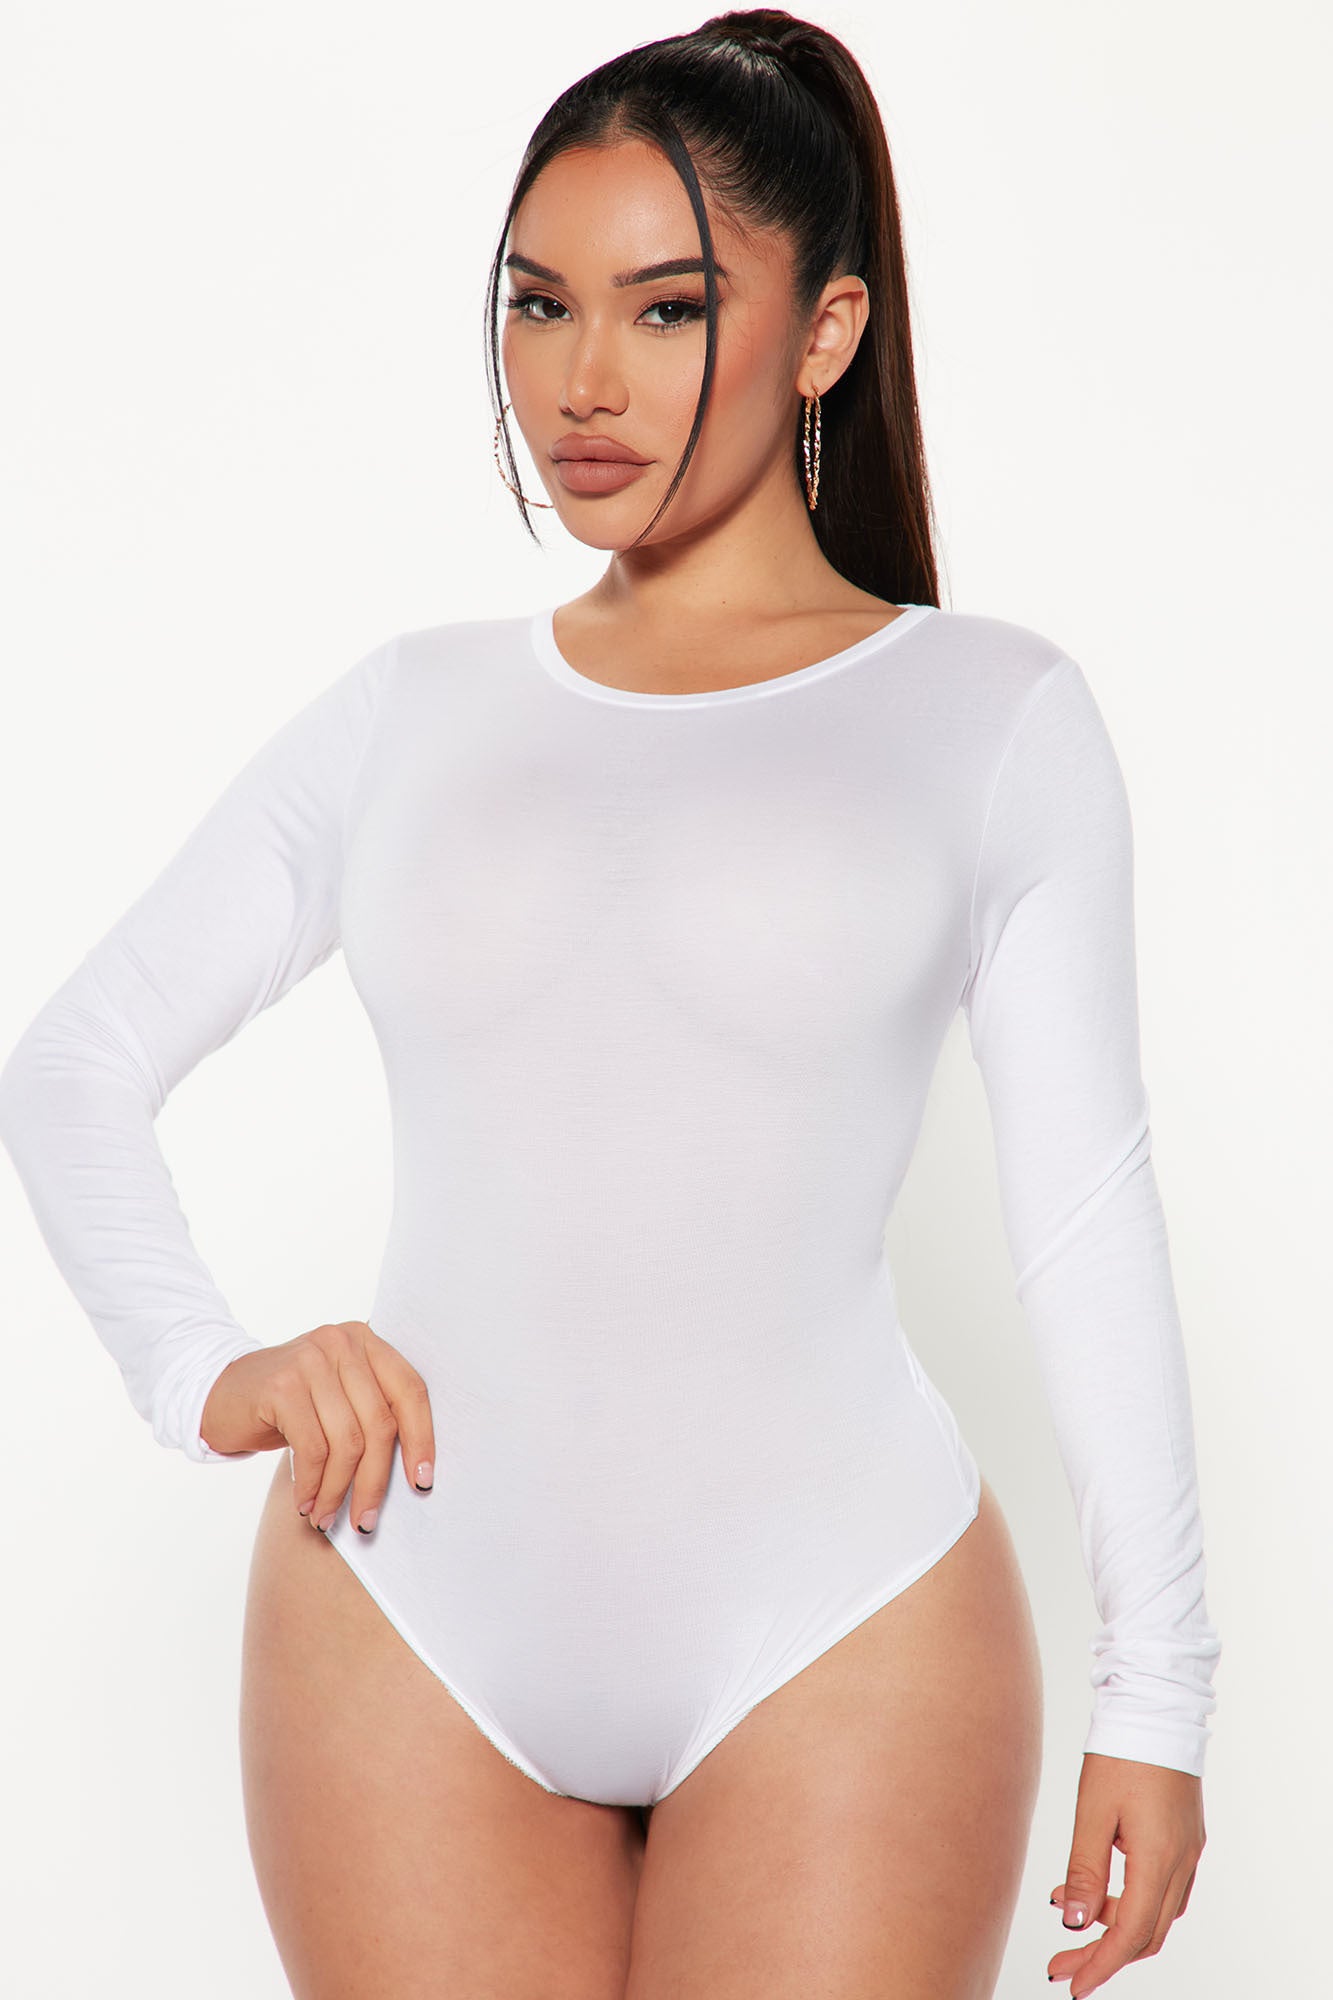 Keilani Short Sleeve Bodysuit - White, Fashion Nova, Bodysuits